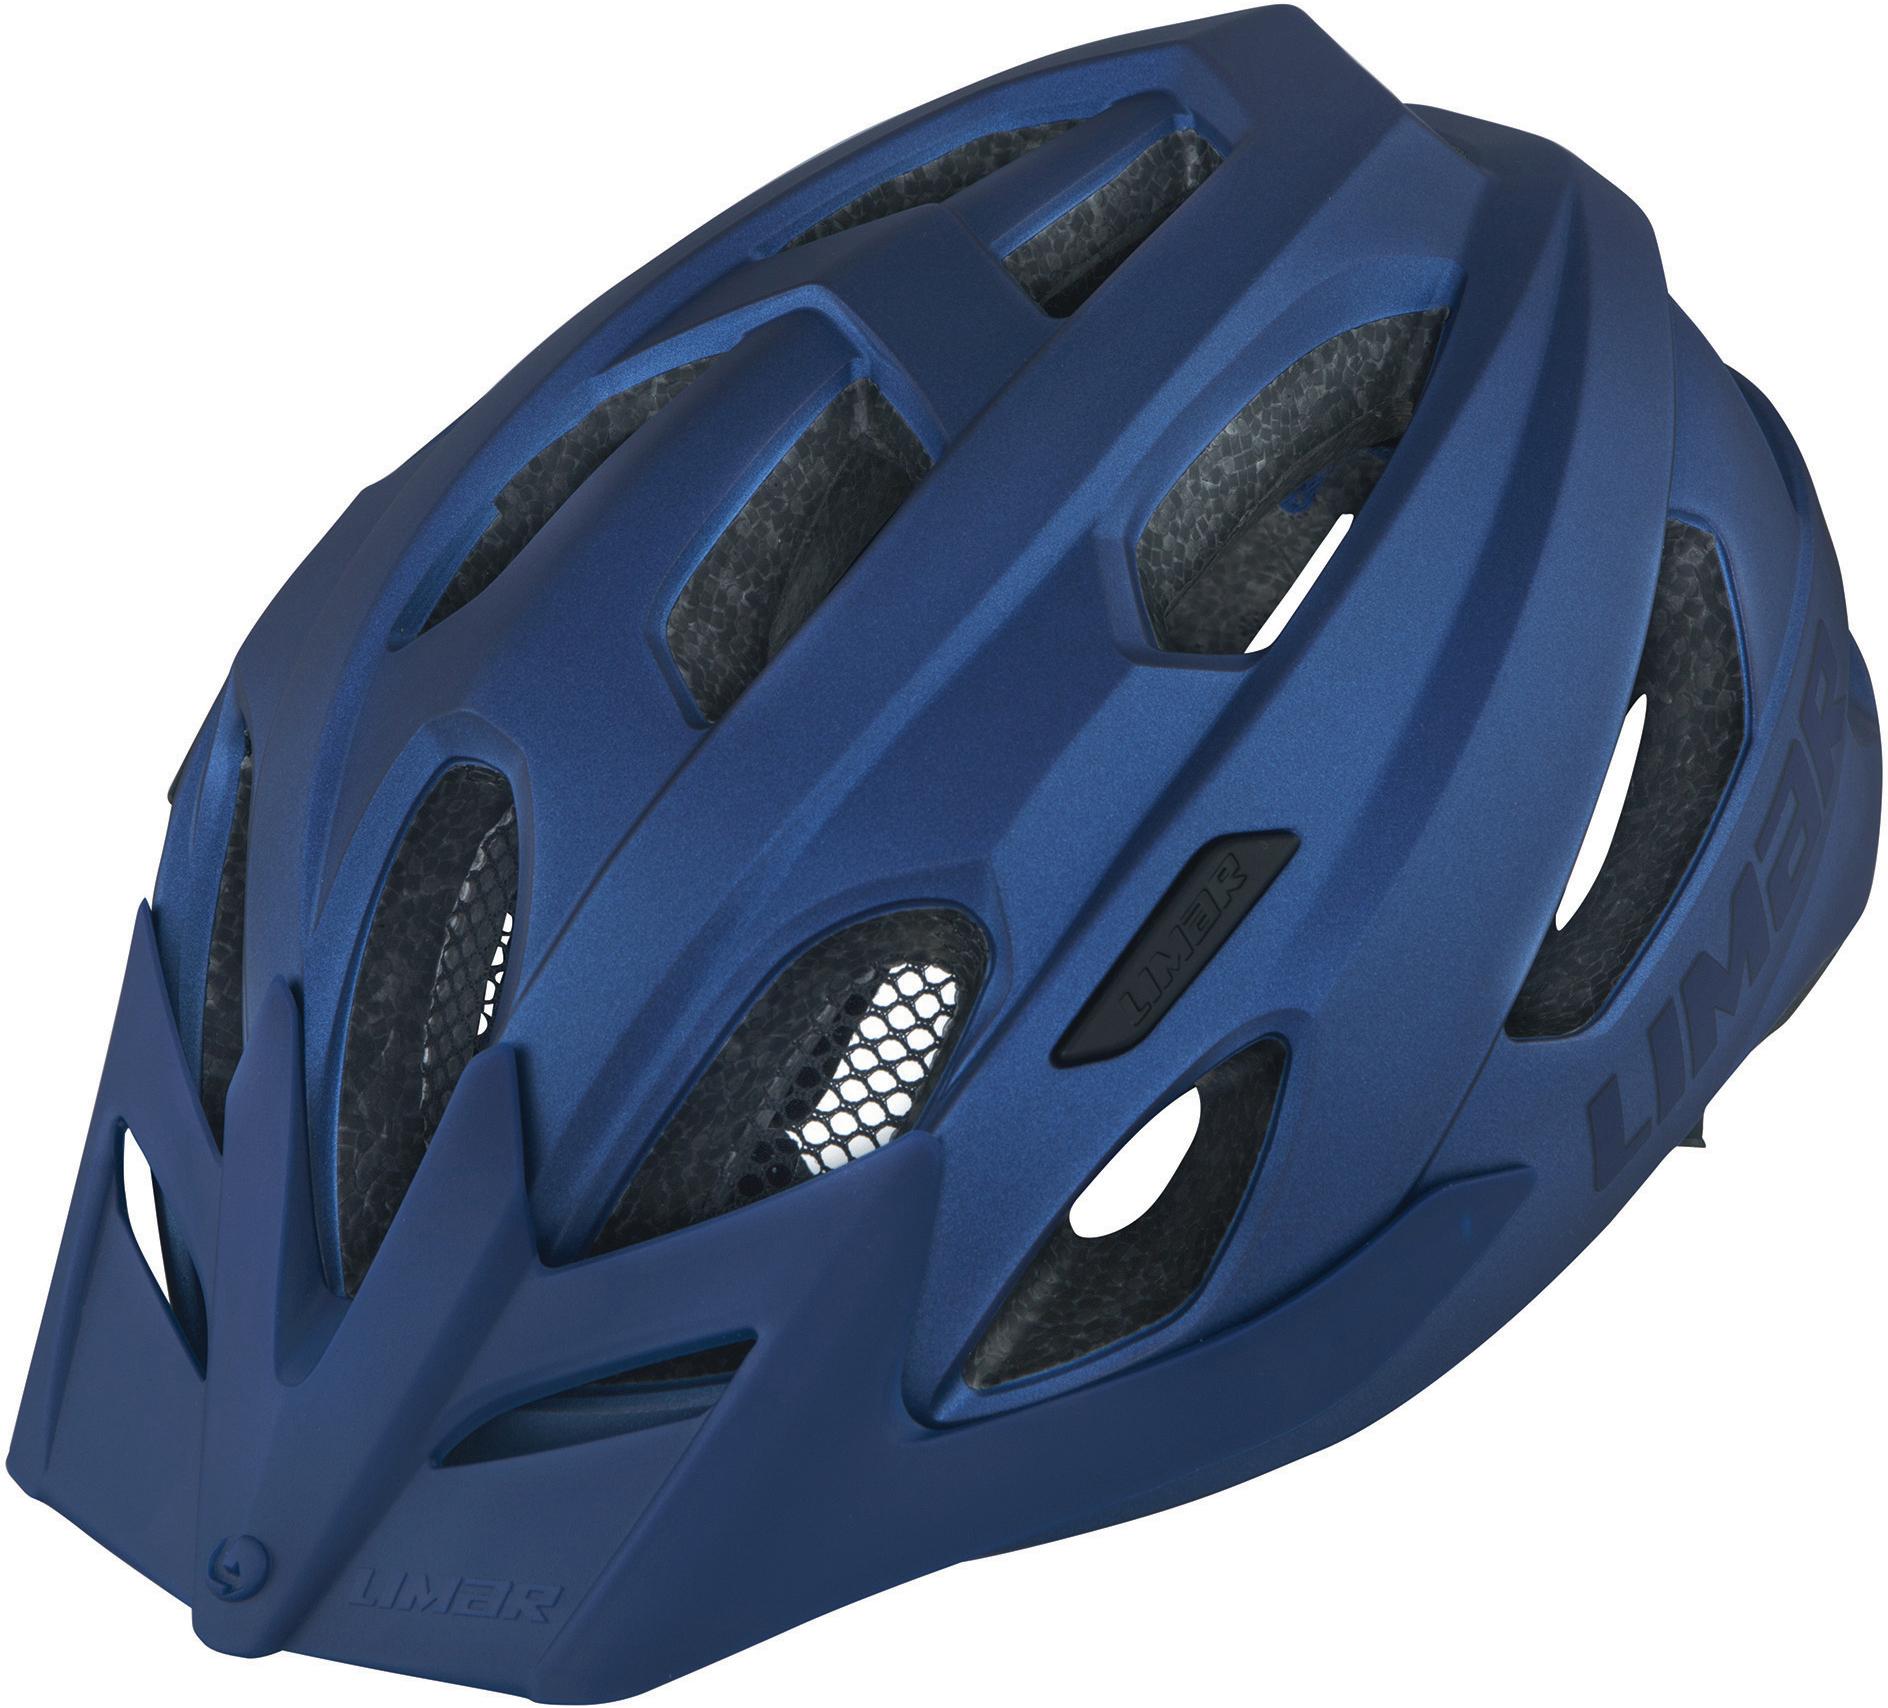 Limar Urbe Helmet - Lead Blue - Large